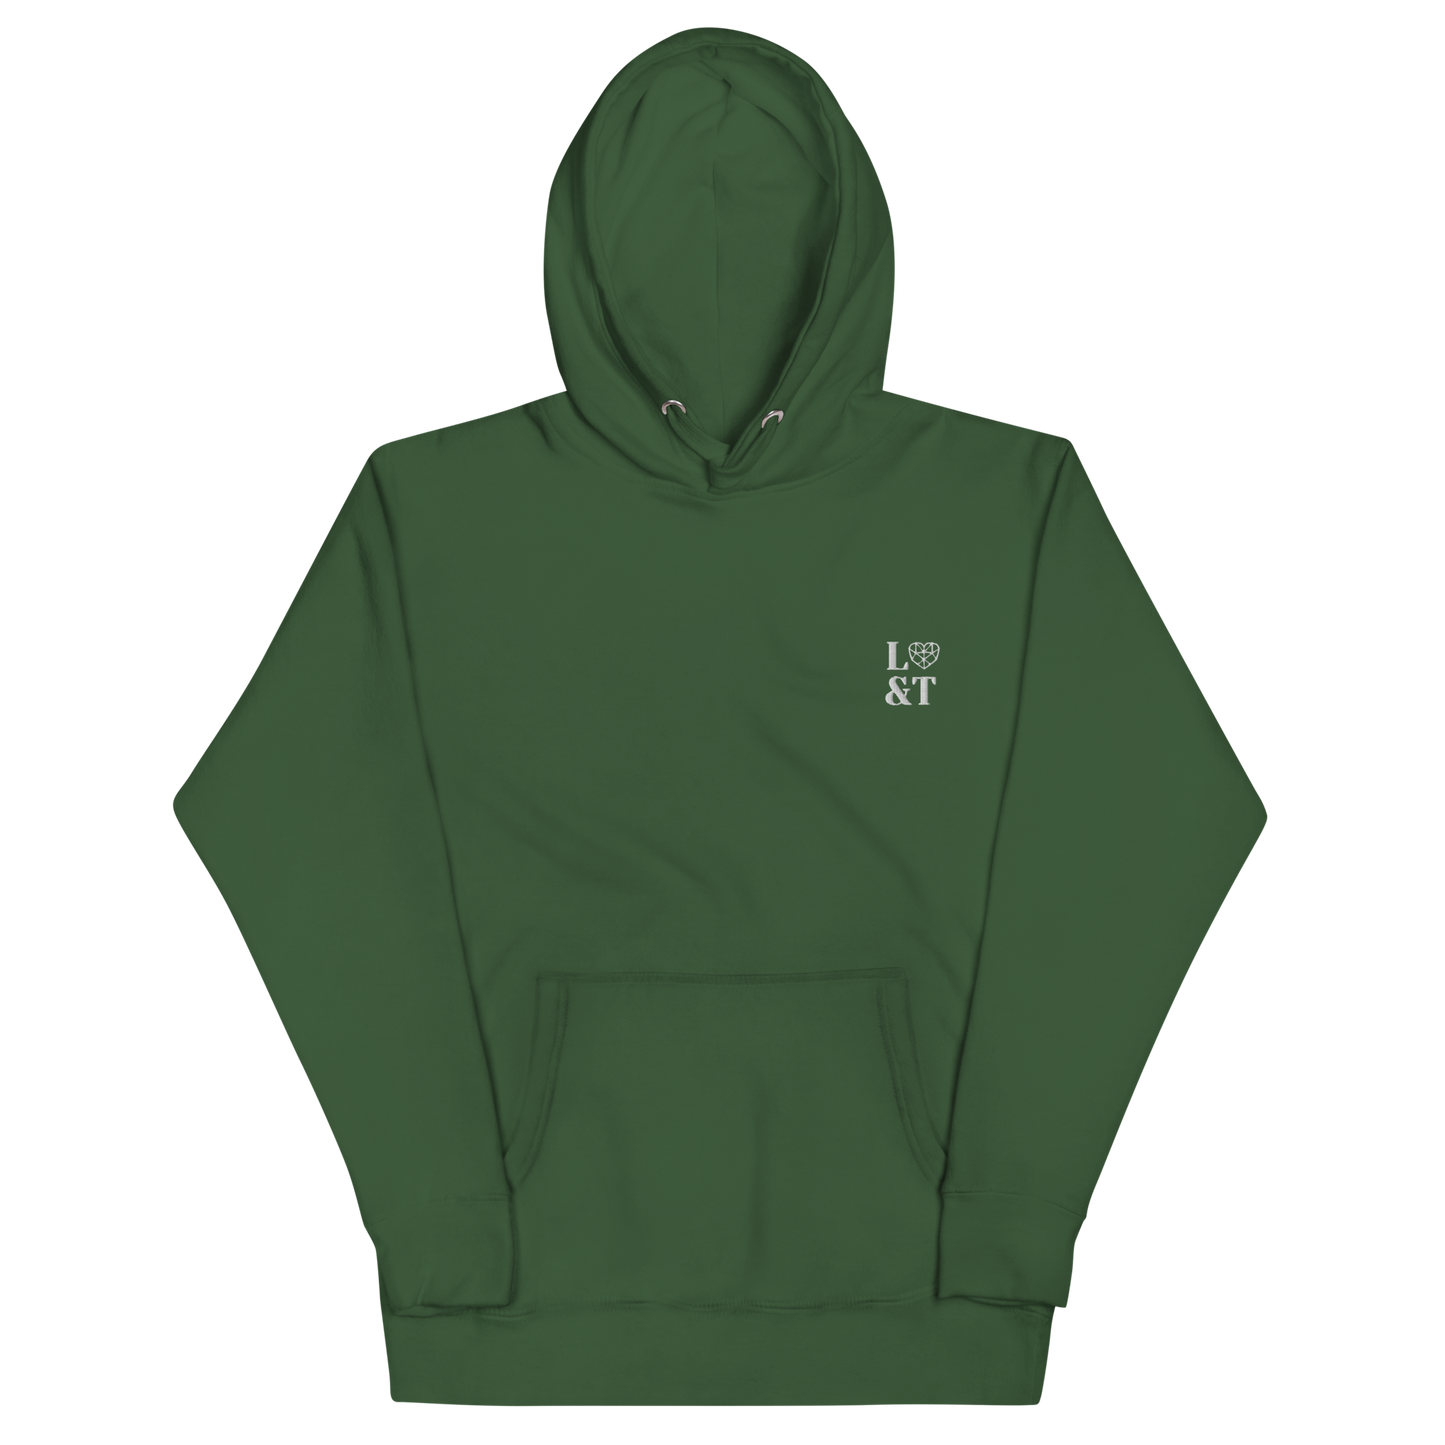 L&T Unisex Hoodie Sweatshirt